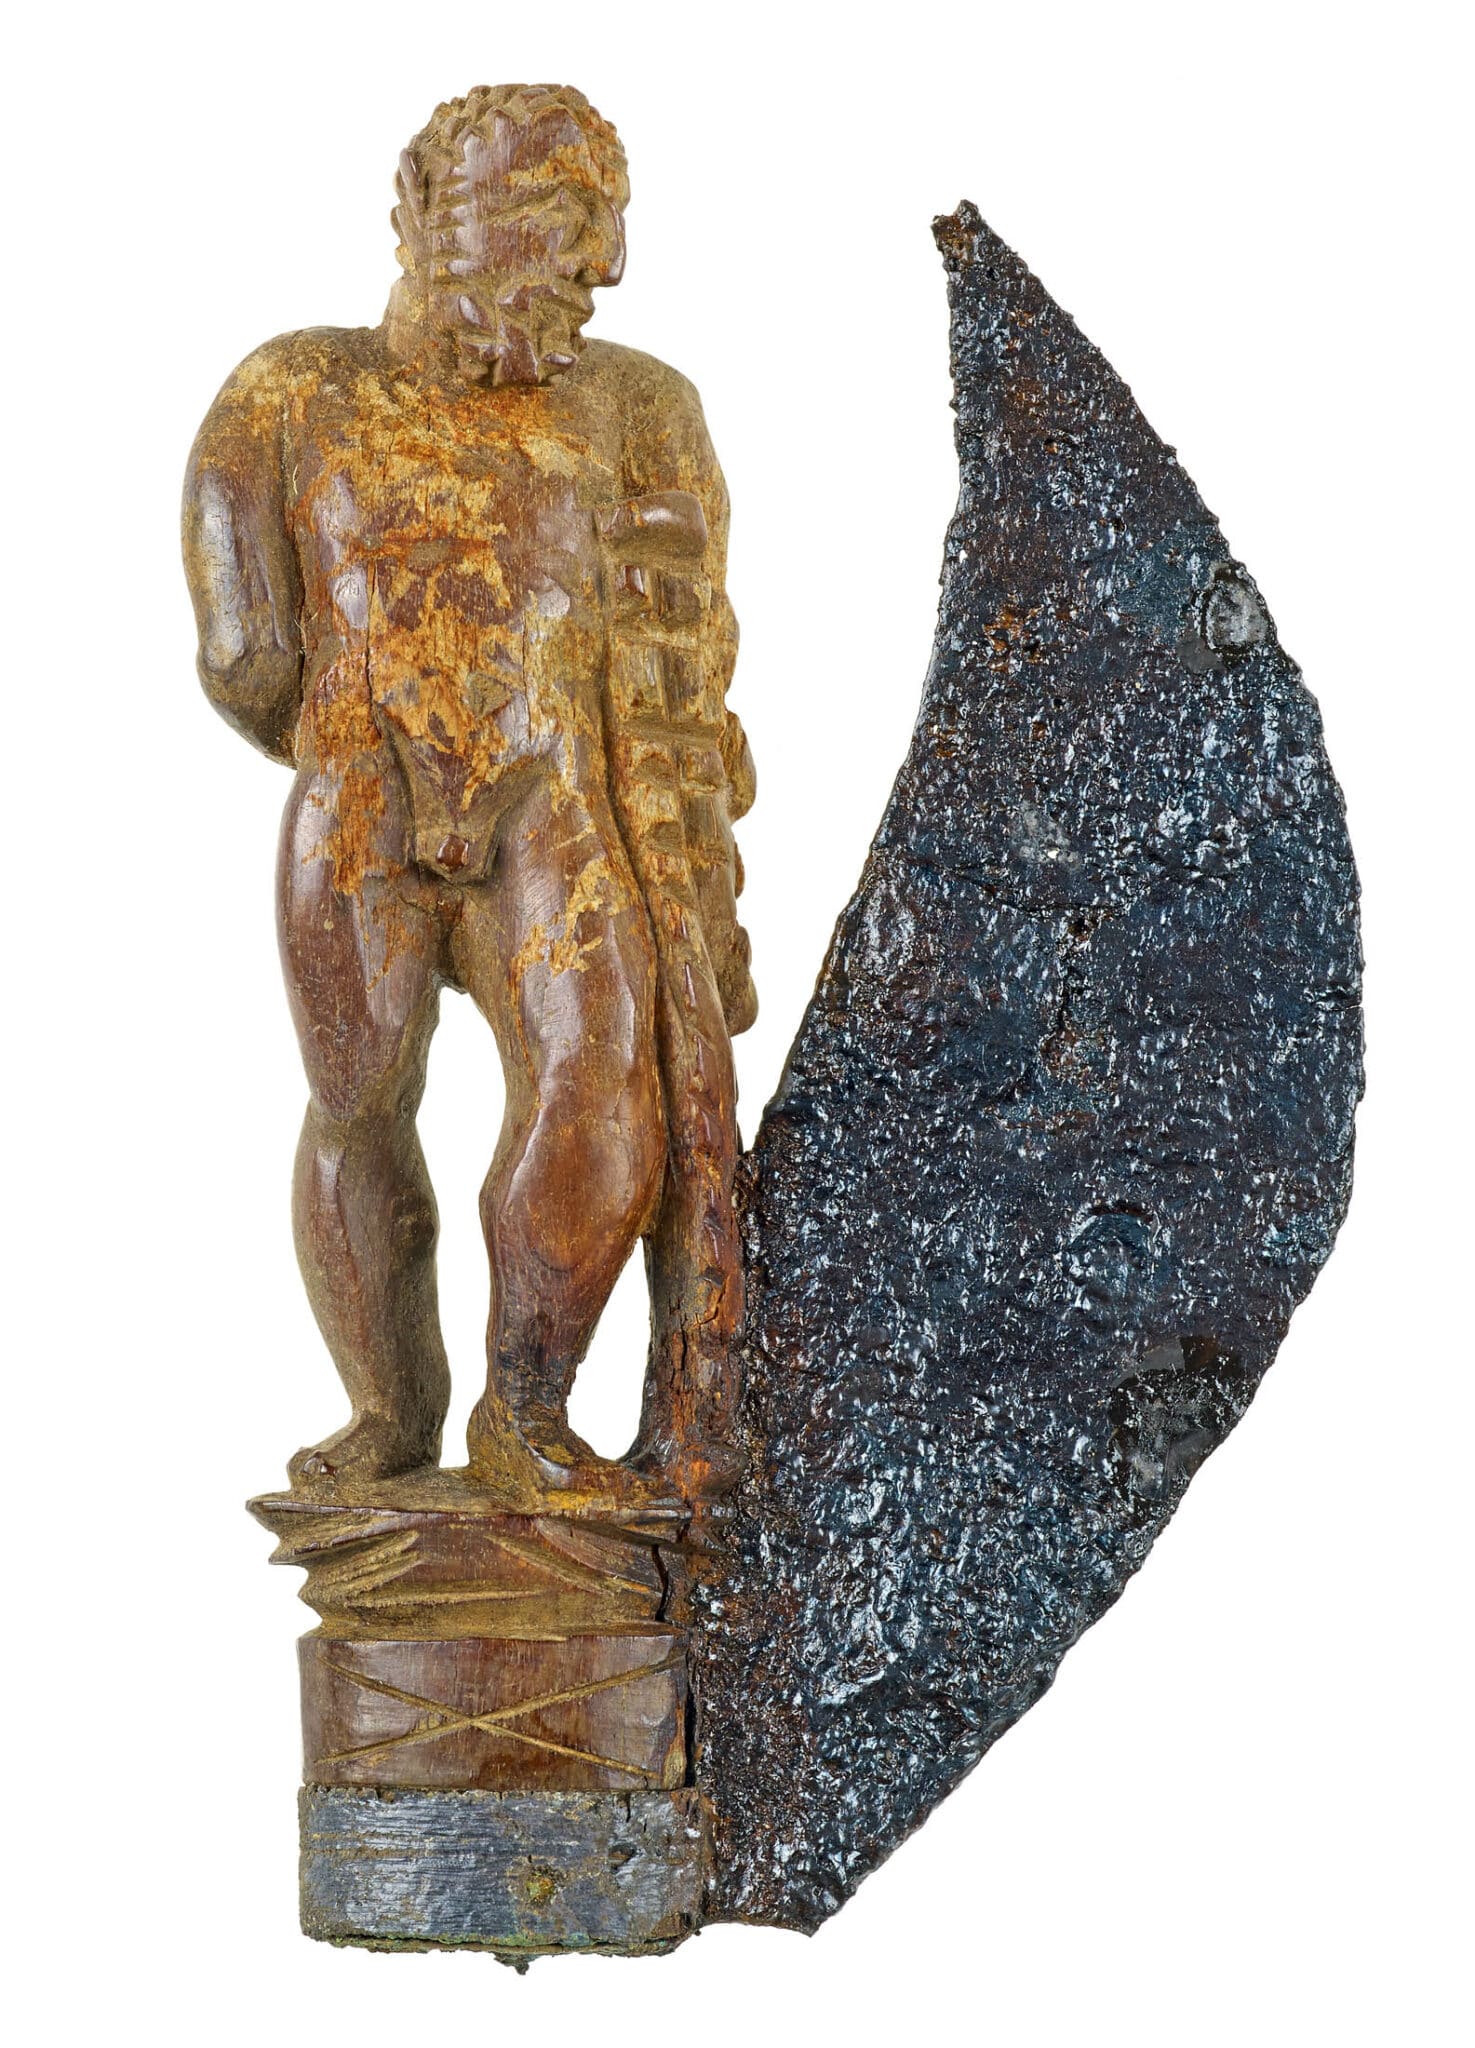 Klappmesser mit Bernsteingriff in Form einer Herkulesfigur, aus einem Sarkophag, gefunden in Zülpich, 3. Jh., LVR-LandesMuseum Bonn. Foto: J. Vogel, LVR-LandesMuseum Bonn